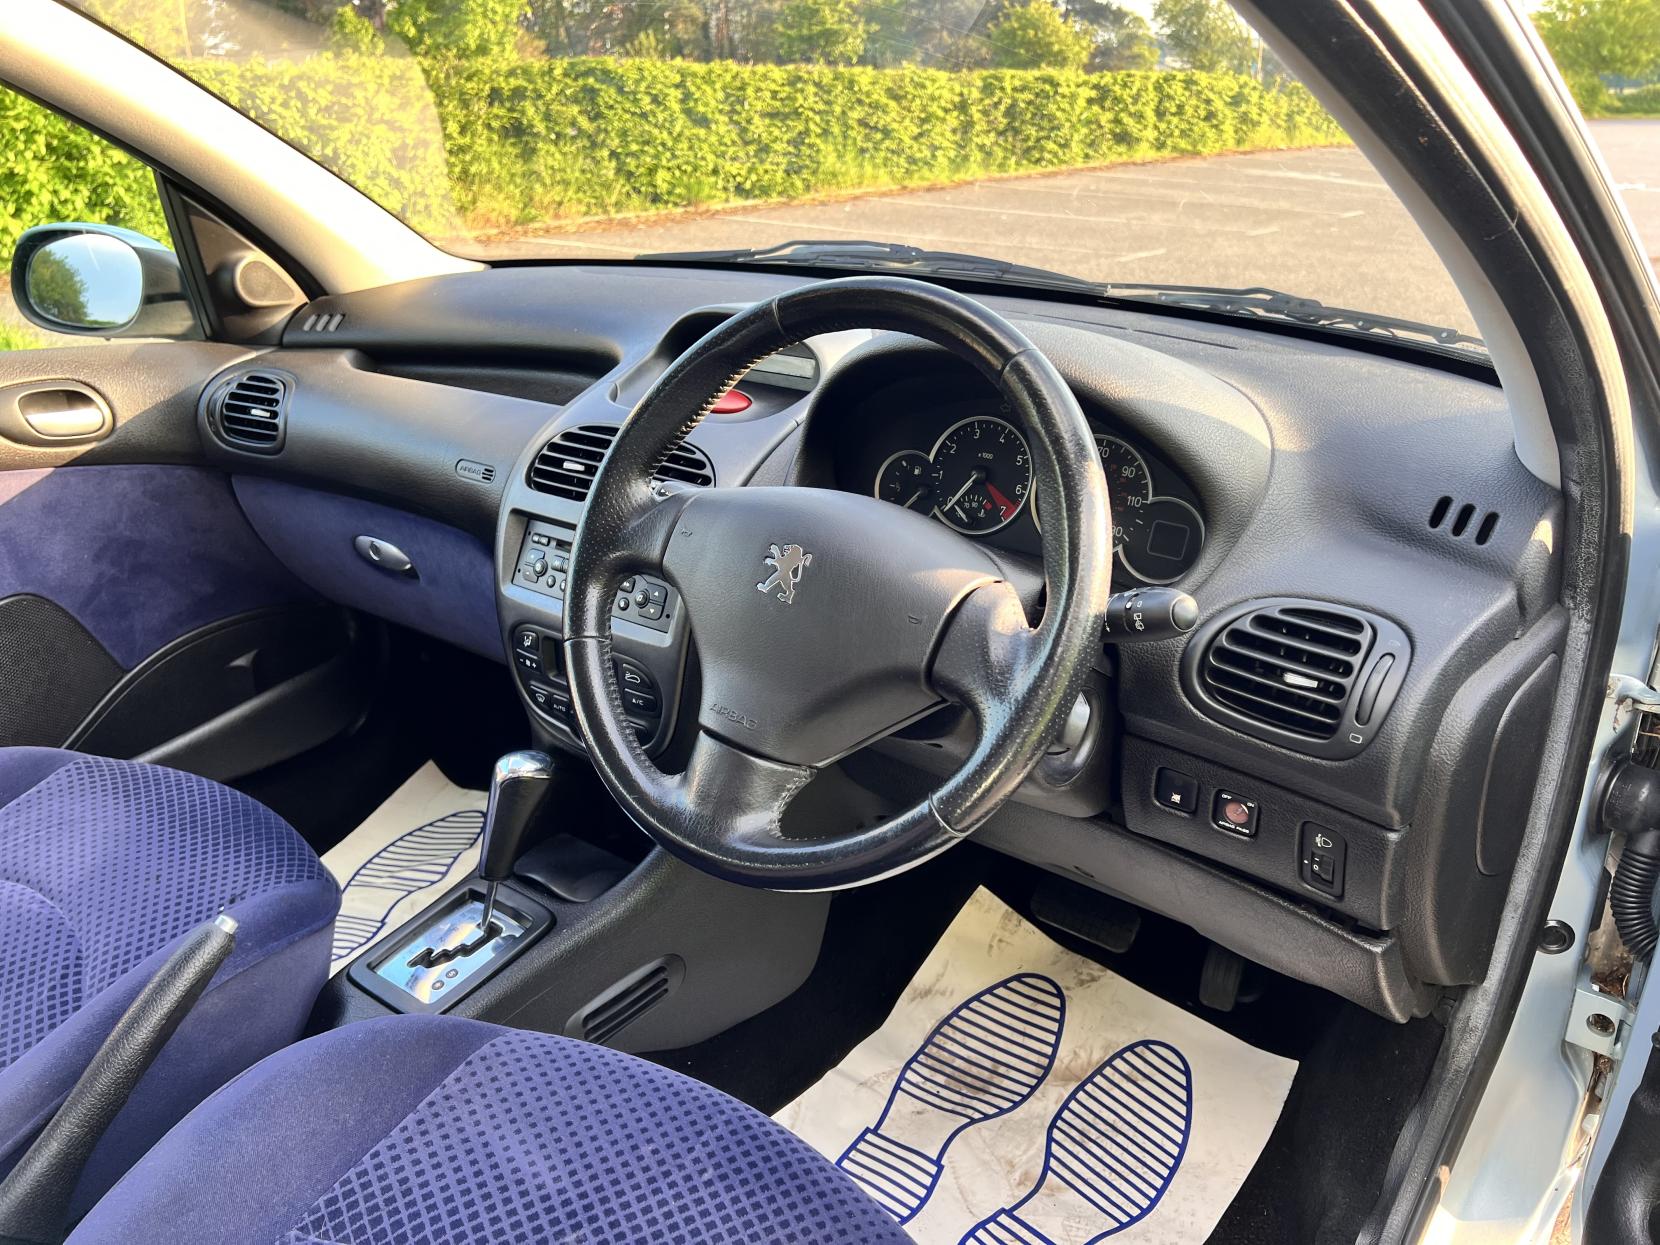 Peugeot 206 1.4 8v SE Hatchback 5dr Petrol Automatic (165 g/km, 75 bhp)